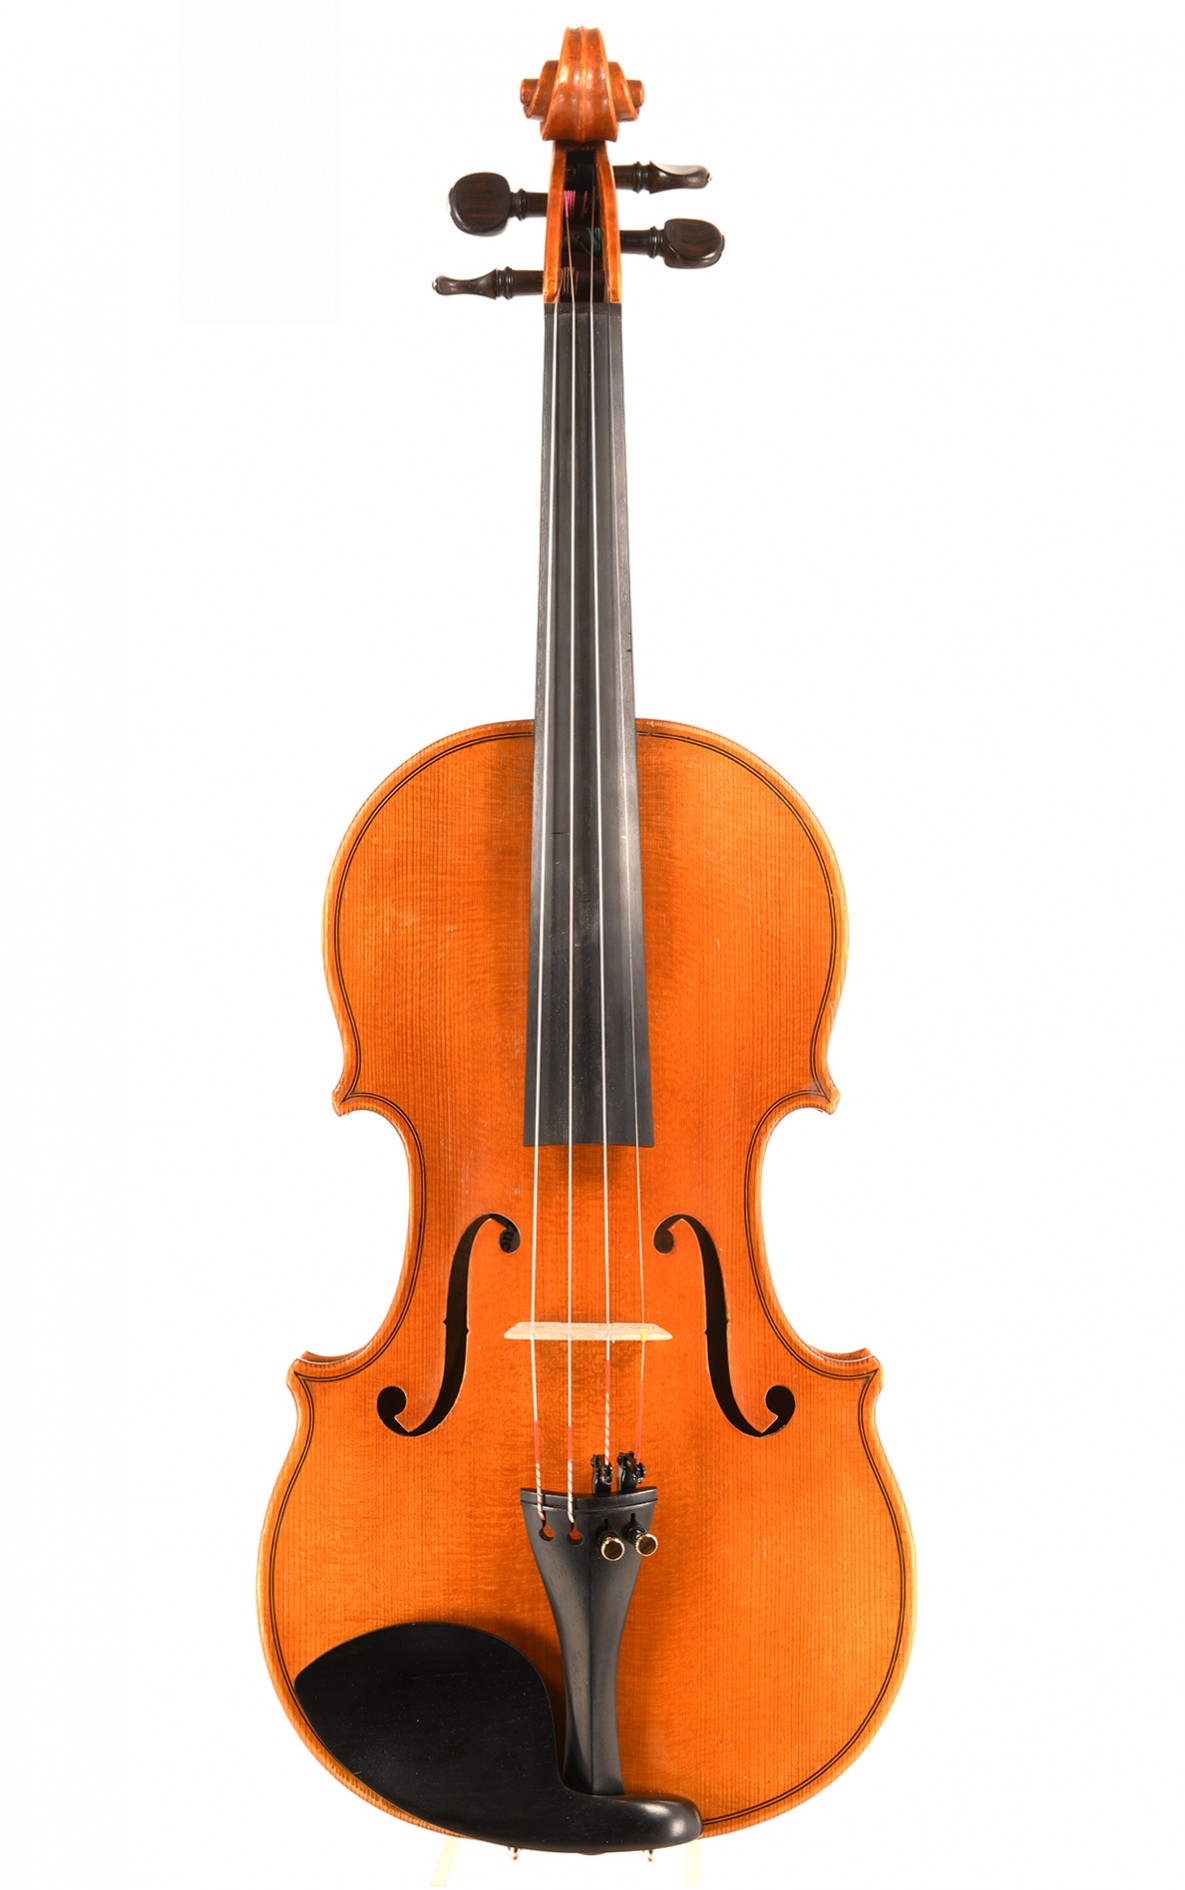 Karl Mächler, Swiss violin from Zurich built 1938